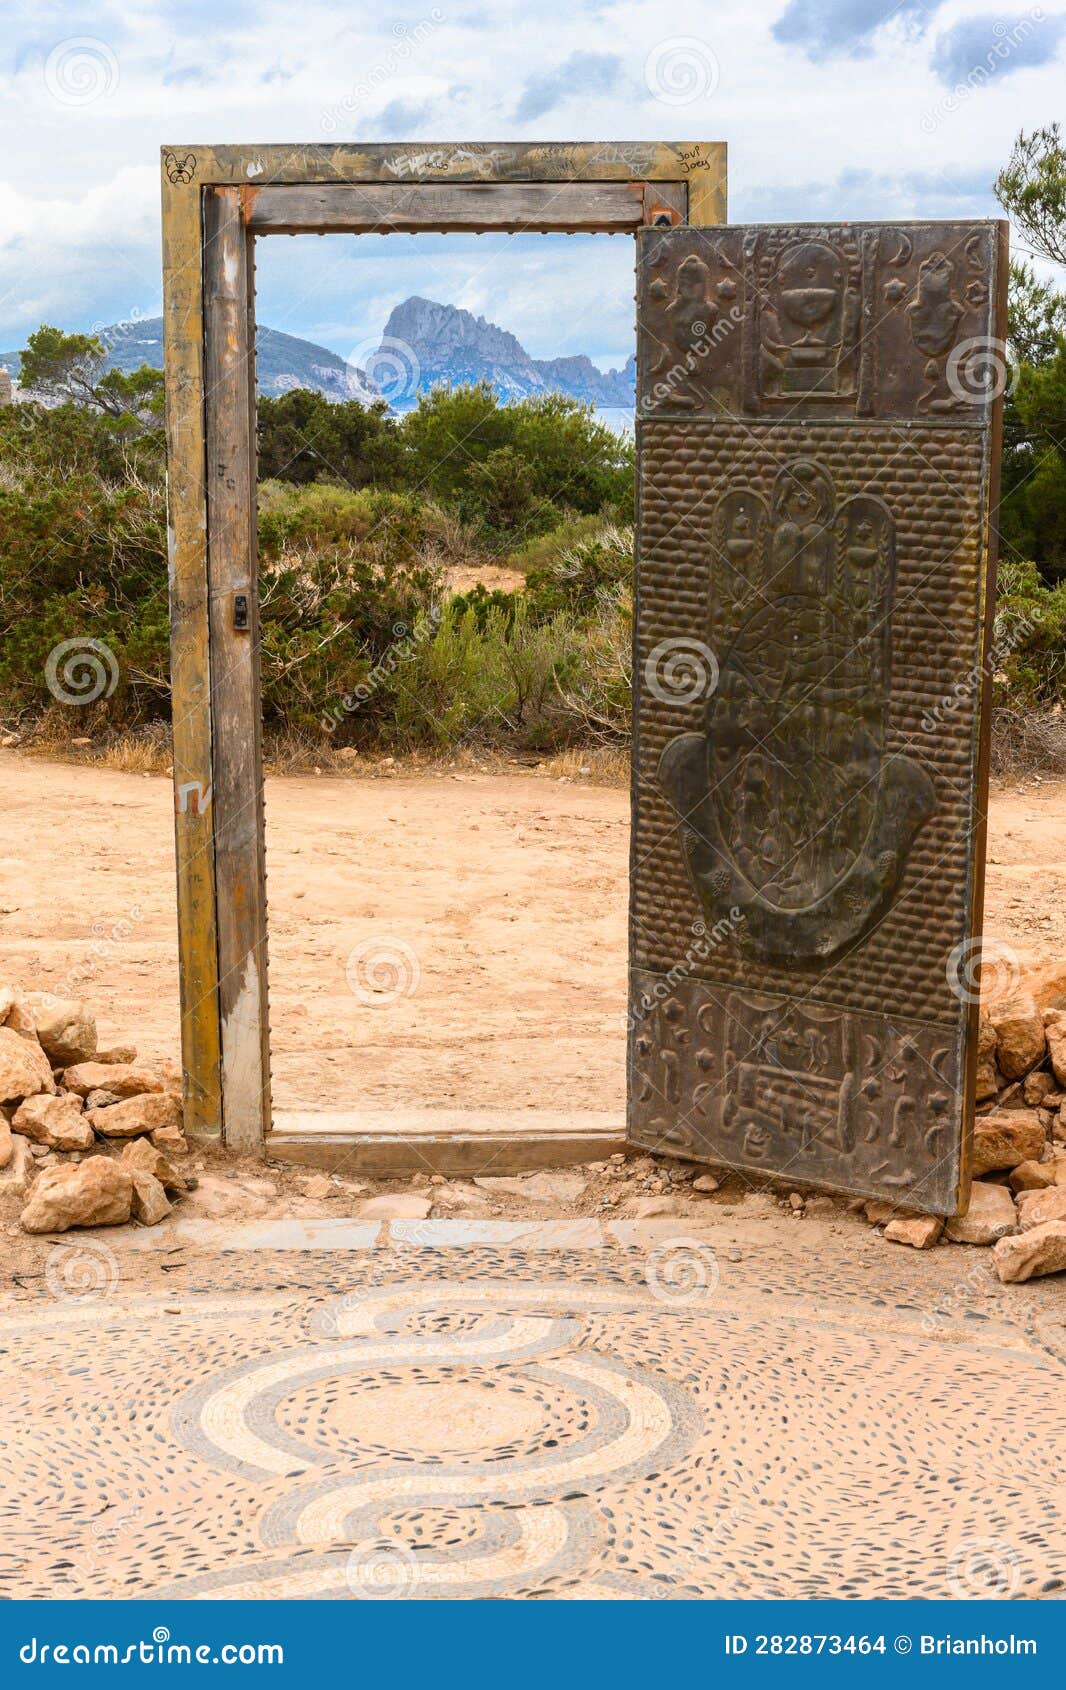 las puertas de can soleil doors in ibiza with es vedra island in the background